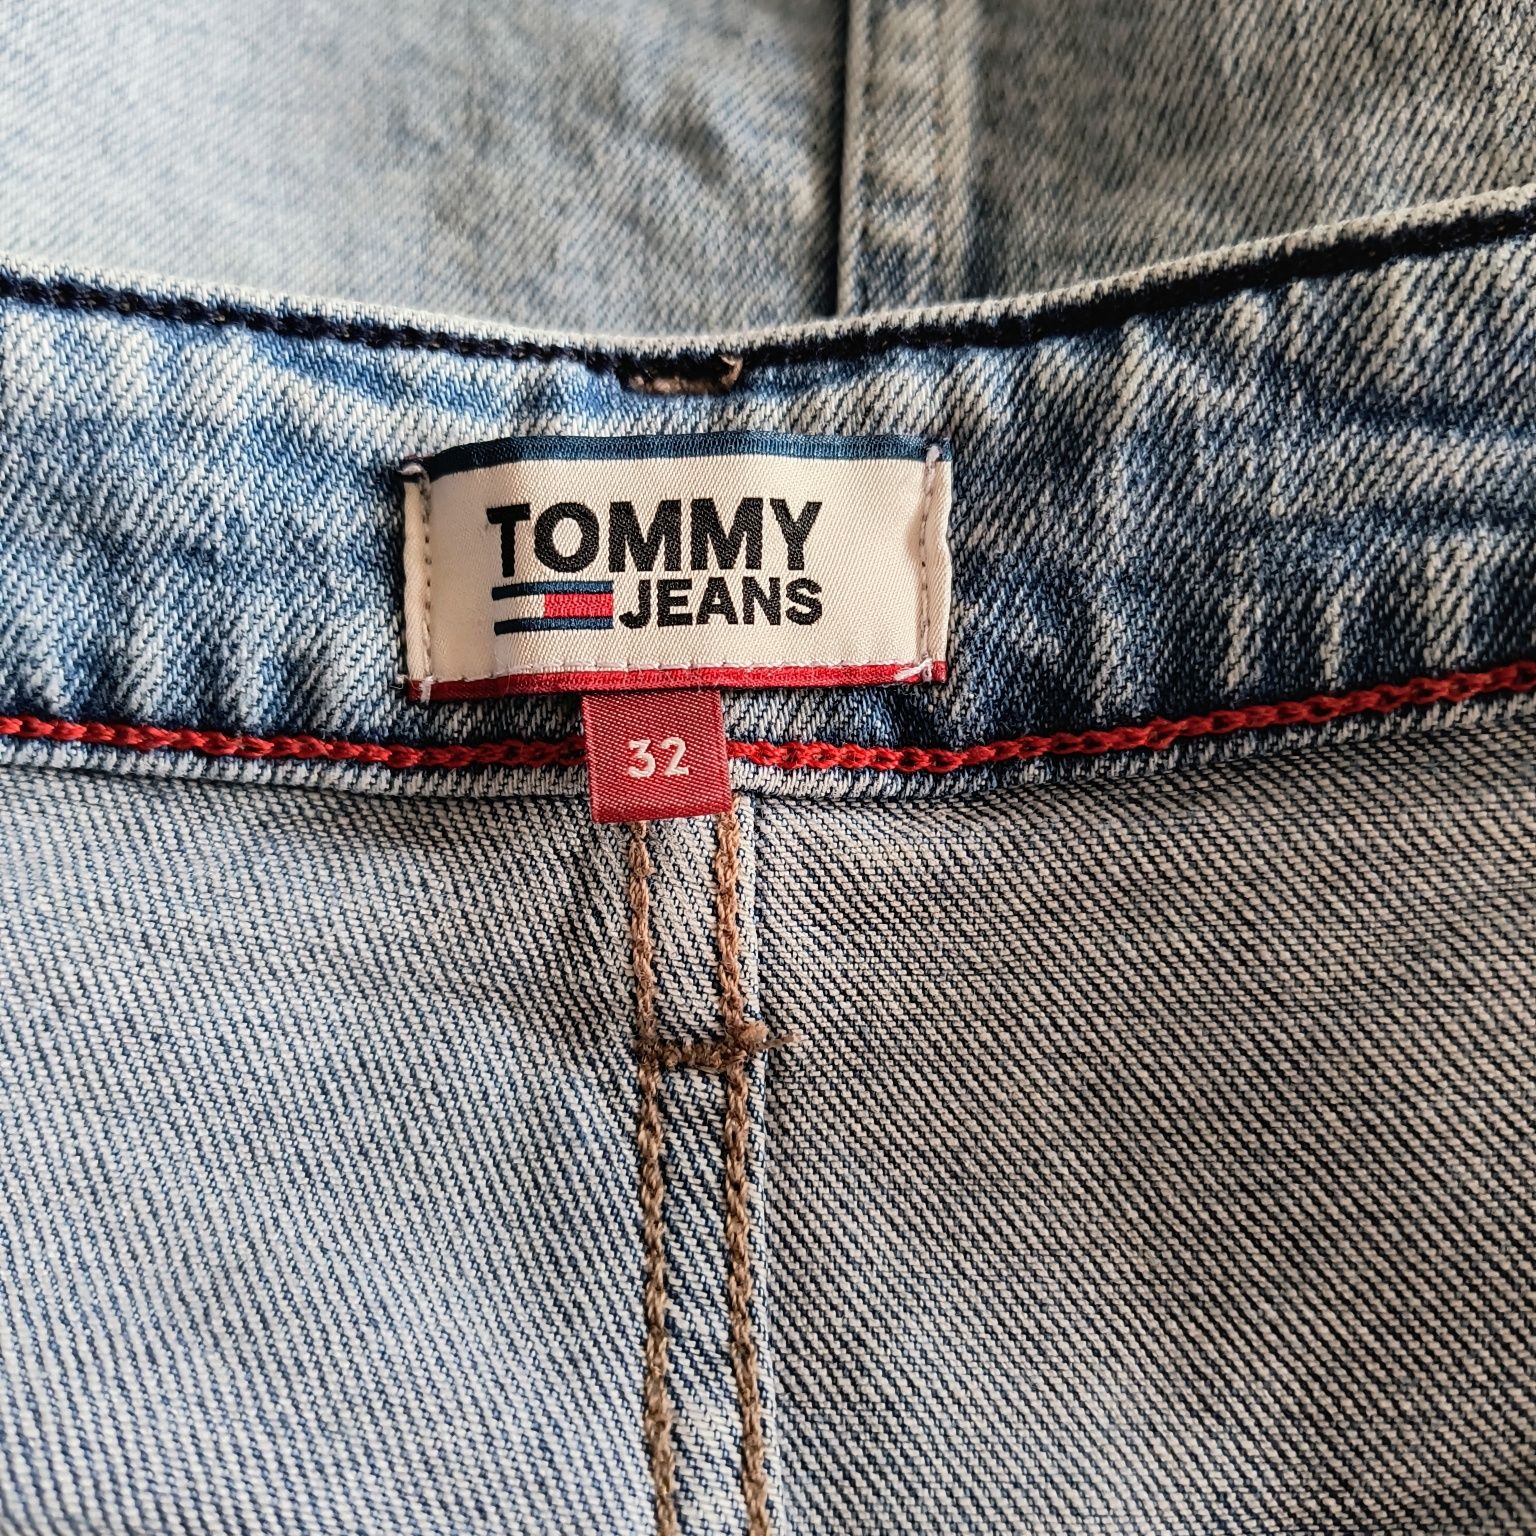 Spódnica Tommy Hilfiger Tommy Jeans